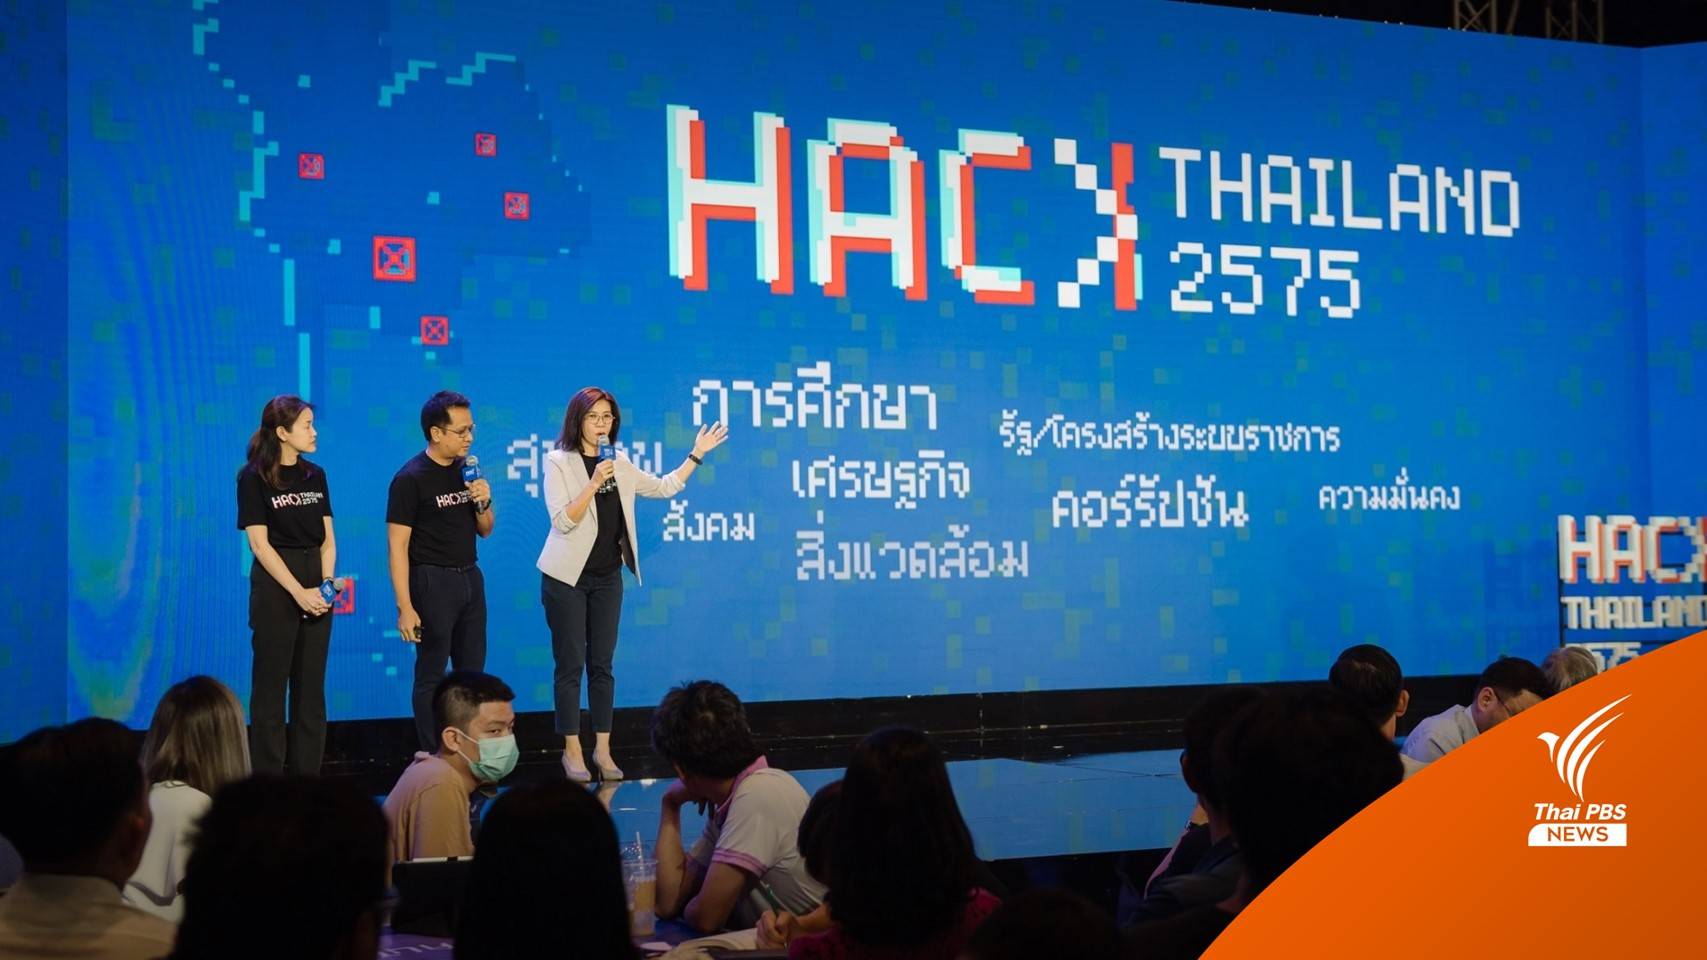 เปิดฉากระเบิดไอเดีย Hack Thailand 2575 พร้อมพลิกโฉมประเทศไทย